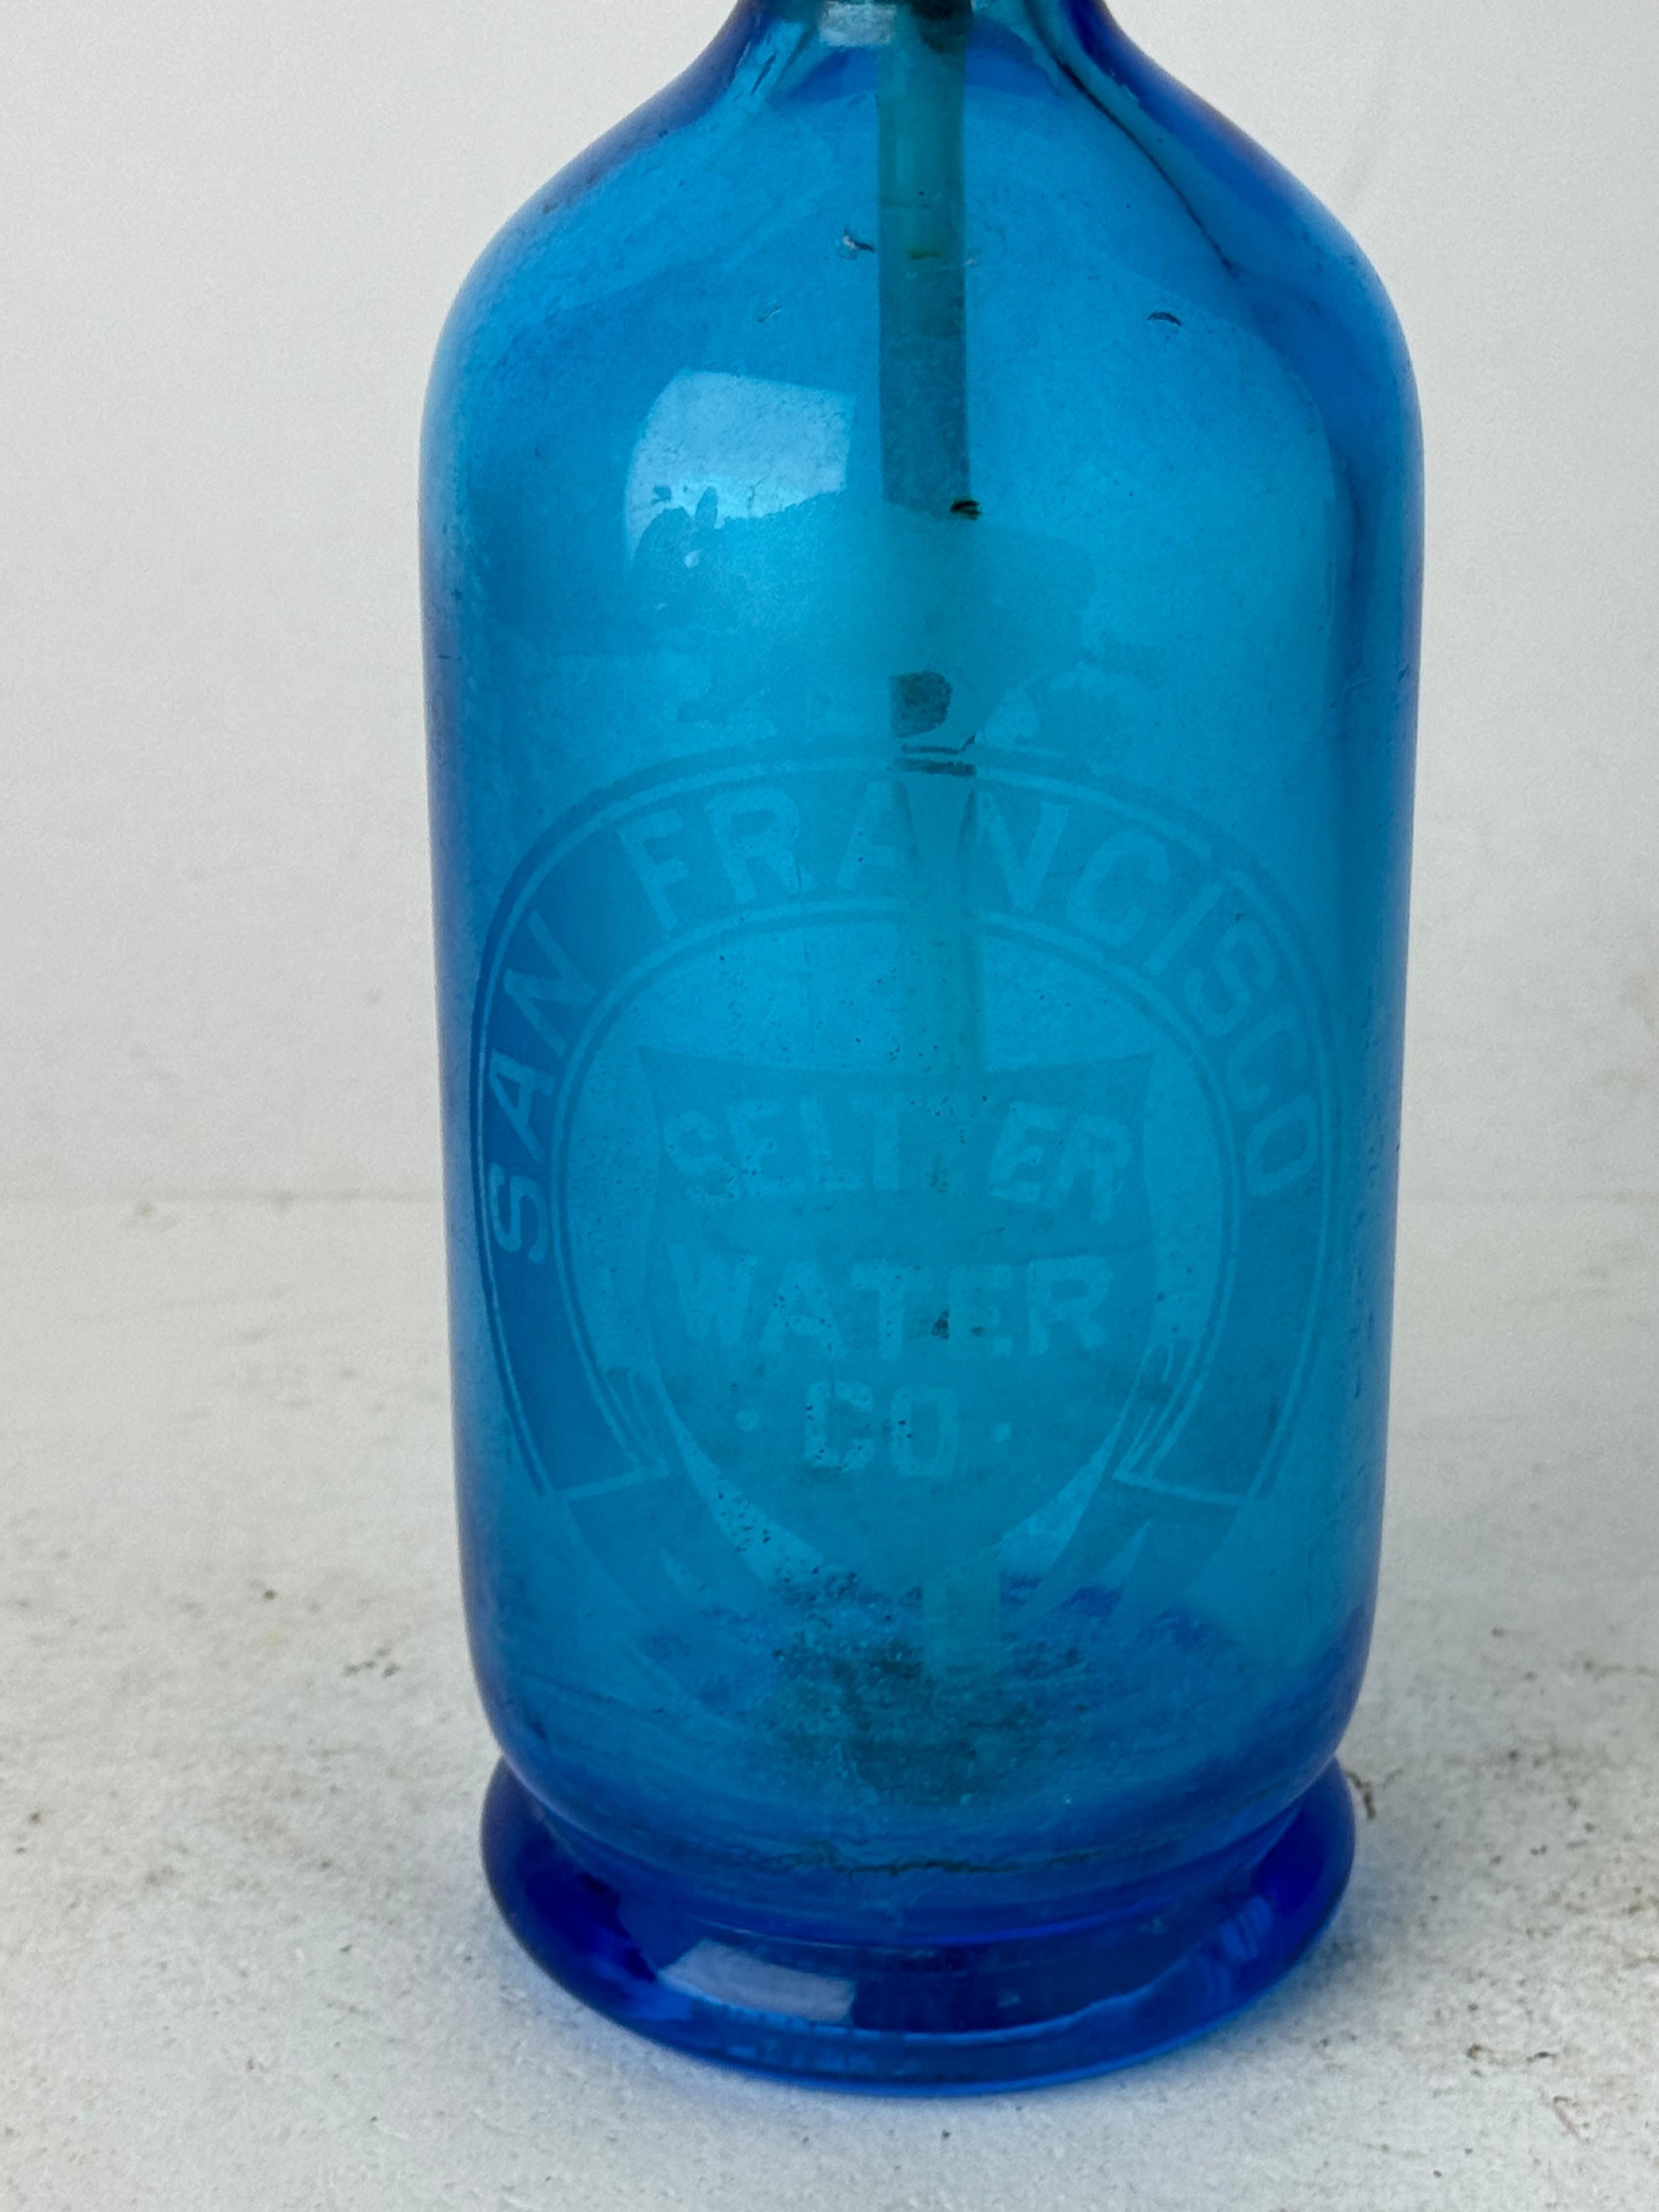 Ajoutez une touche de charme ancien à votre bar ou à votre étalage avec notre captivante bouteille d'eau de Seltz en verre bleu antique/vintage, fabriquée en Autriche pour la prestigieuse San Francisco Seltzer Water Company. Cette pièce étonnante ne